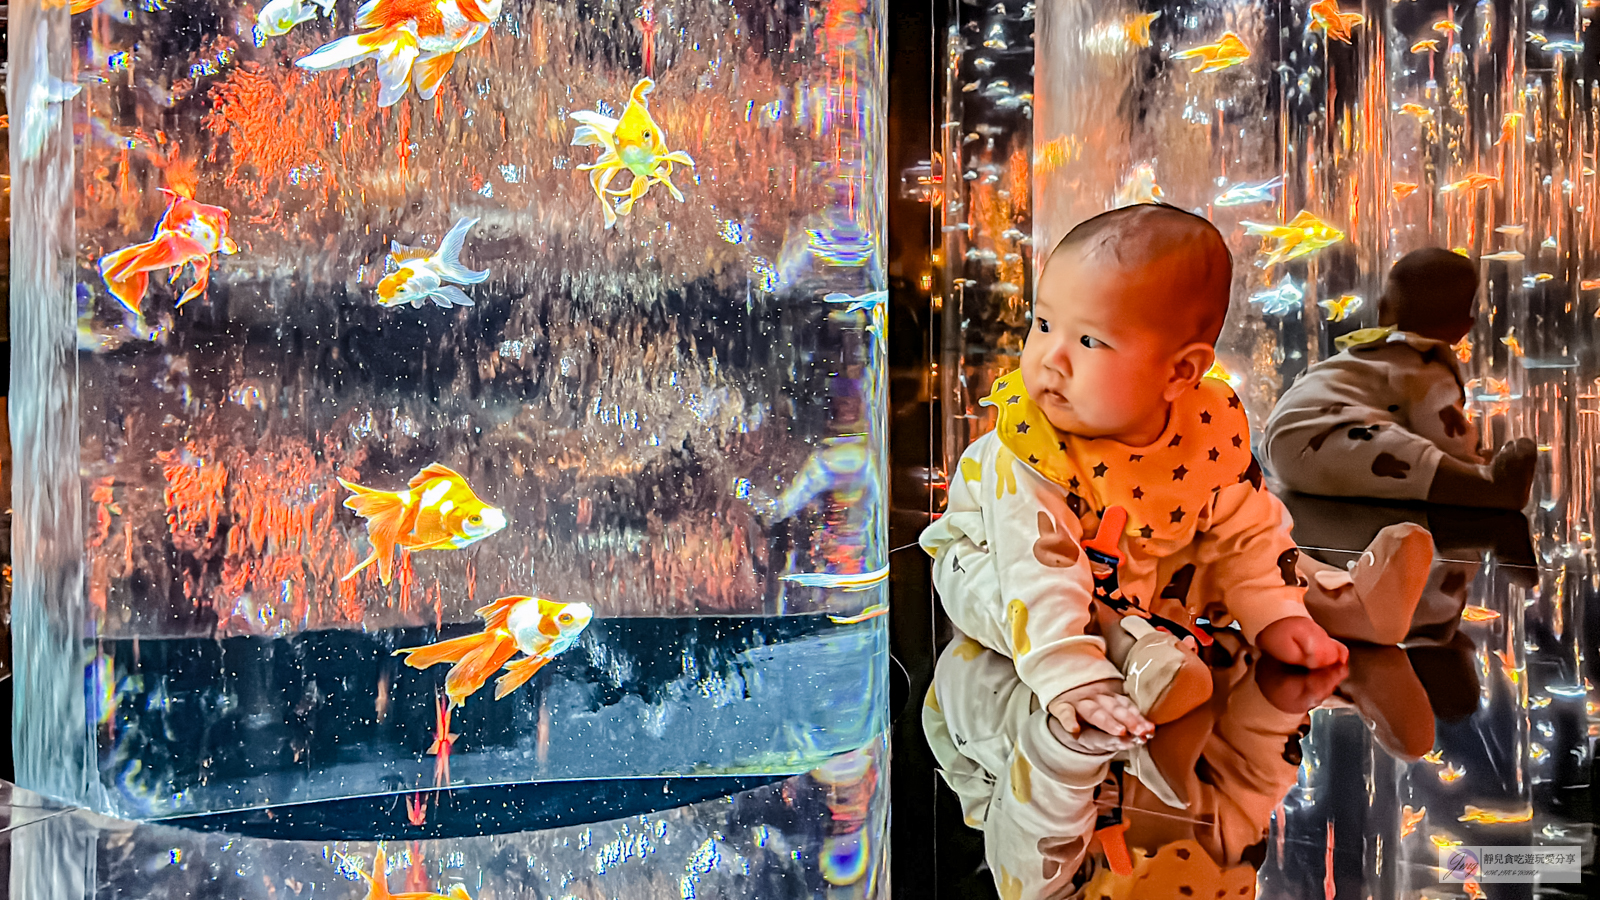 日本東京旅遊-銀座藝術水族館-活藝術品！多達70種水中舞者金魚，結合高科技聲光效果與裝置藝術設計，療癒又夢幻/銀座三越百貨內 @靜兒貪吃遊玩愛分享